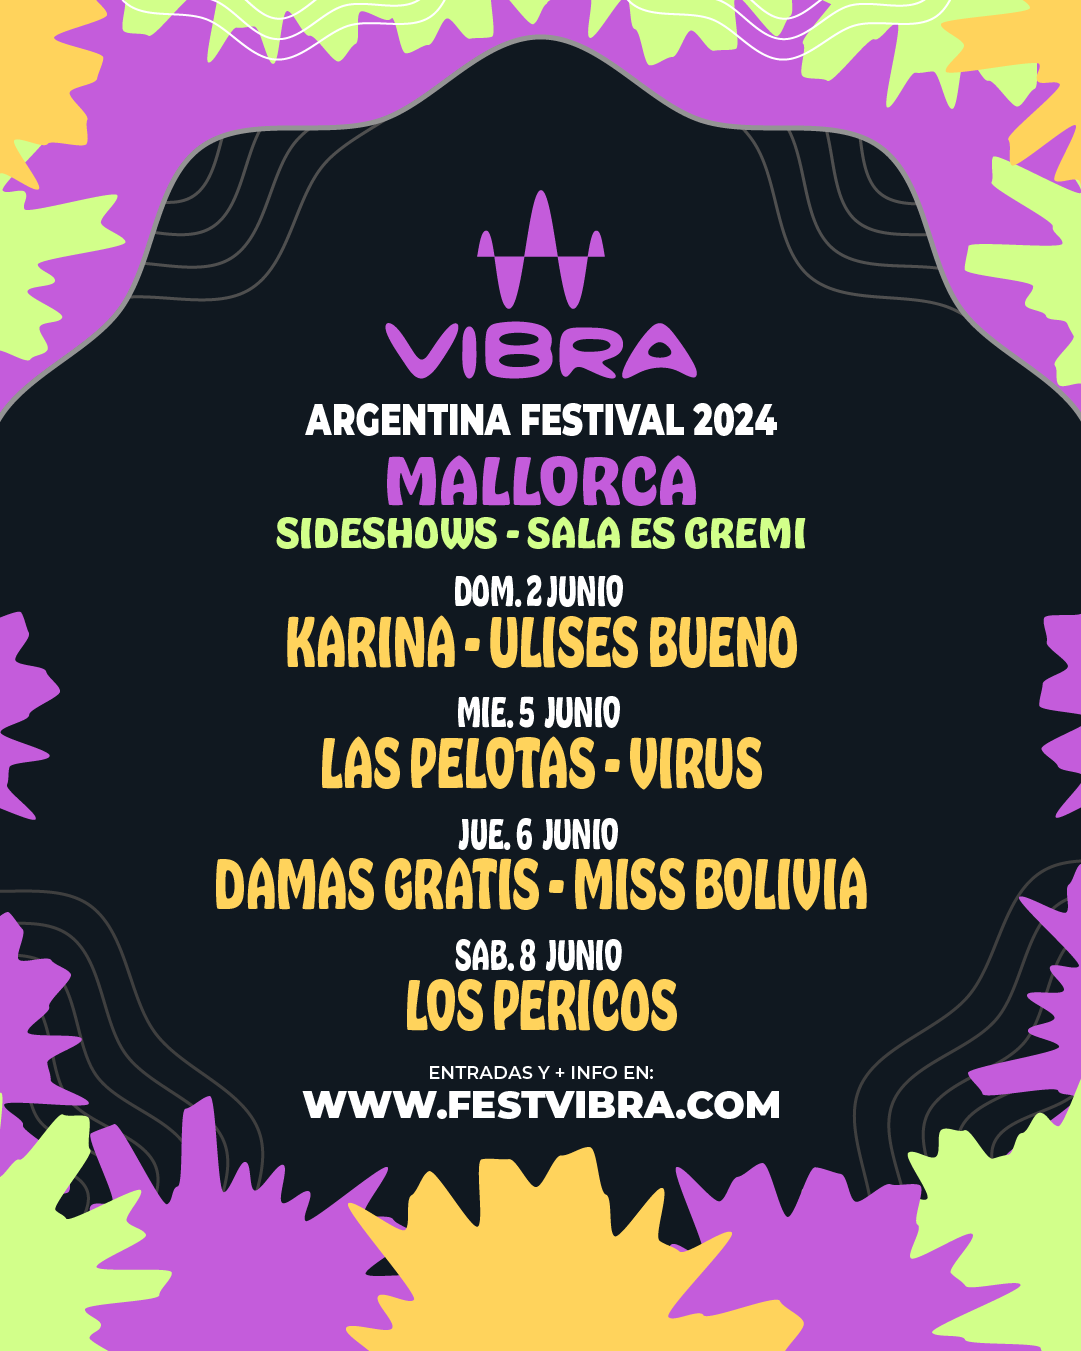 VIBRA ARGENTINA FESTIVAL 2024 en MALLORCA, sala es Gremi, Domingo 2 Junio Karina y Ulises Buenmo, Miercoles 5 de Junio Las Pelotas y Virus, Jueves 6 Junio, Damas Gratis y Miss Bolivia, Sabado 8 Junio, Los Perico. Entradas y Info: www.festvibra.com